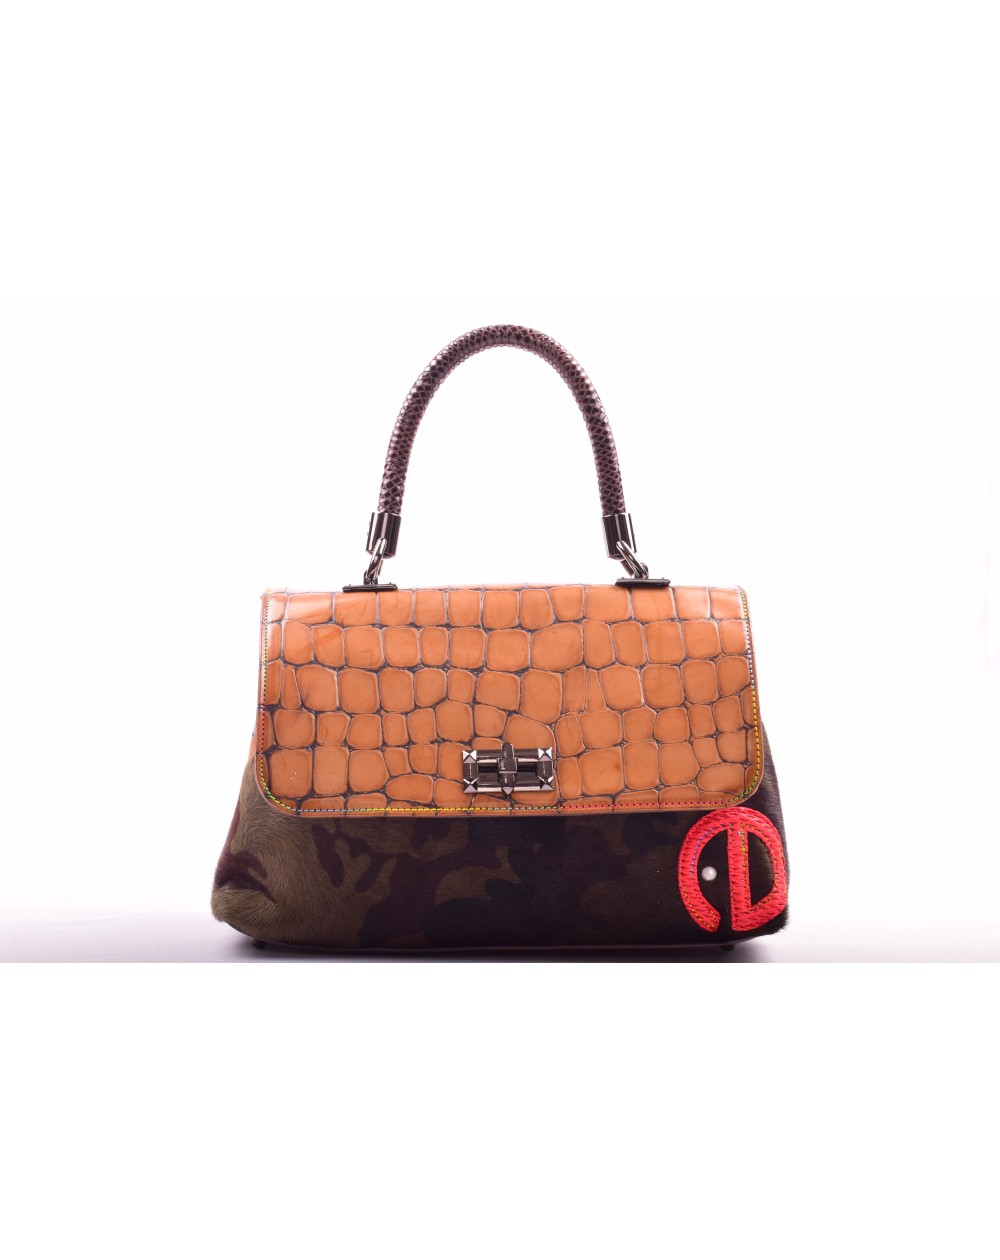 Prana Bag 6 - Leather handbag